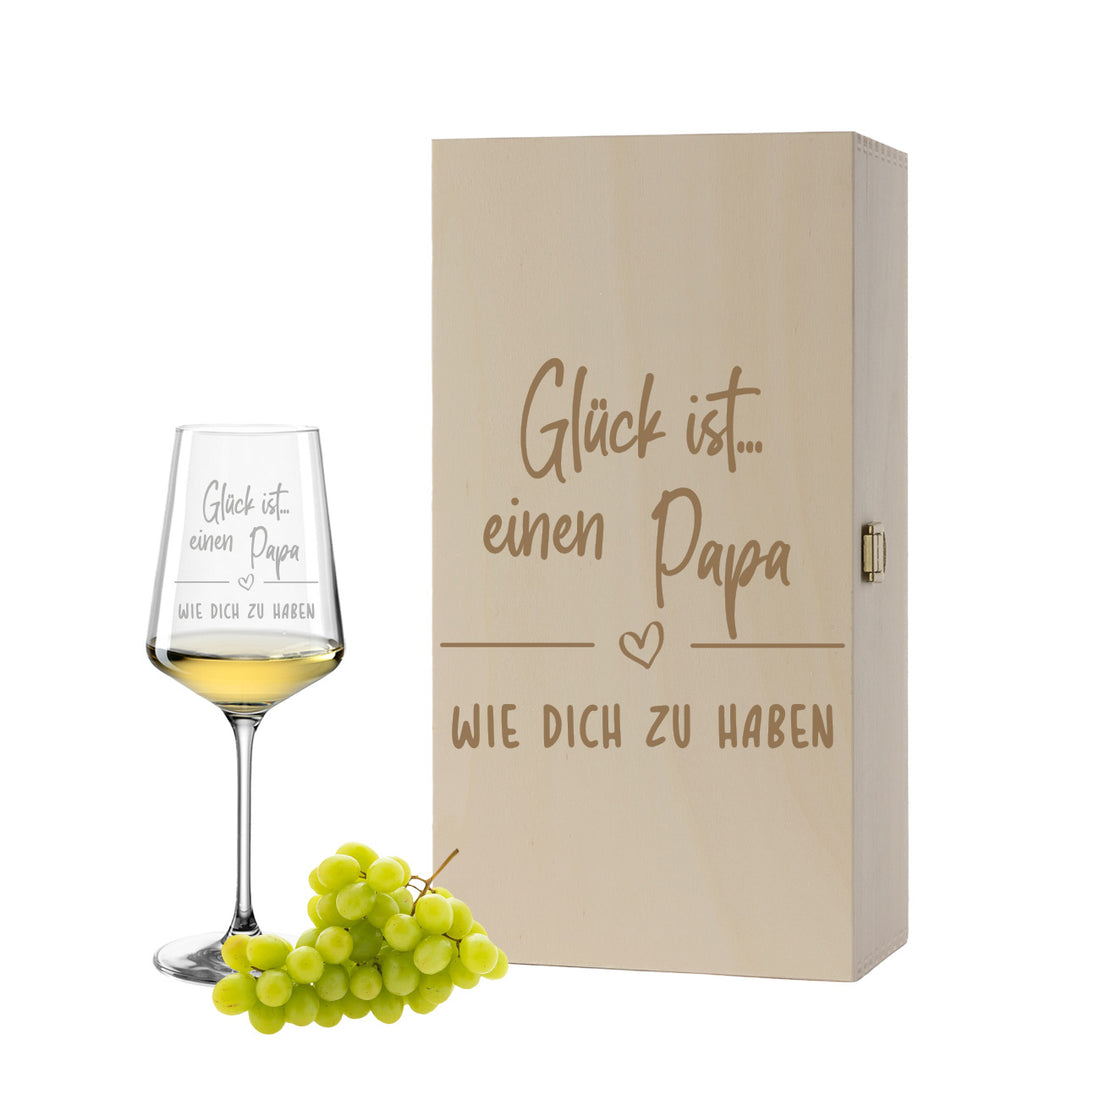 Weinglas mit Gravur Leonardo Puccini "GLÜCK IST EINEN PAPA WIE DICH ZU HABEN" inkl. Holzbox klein